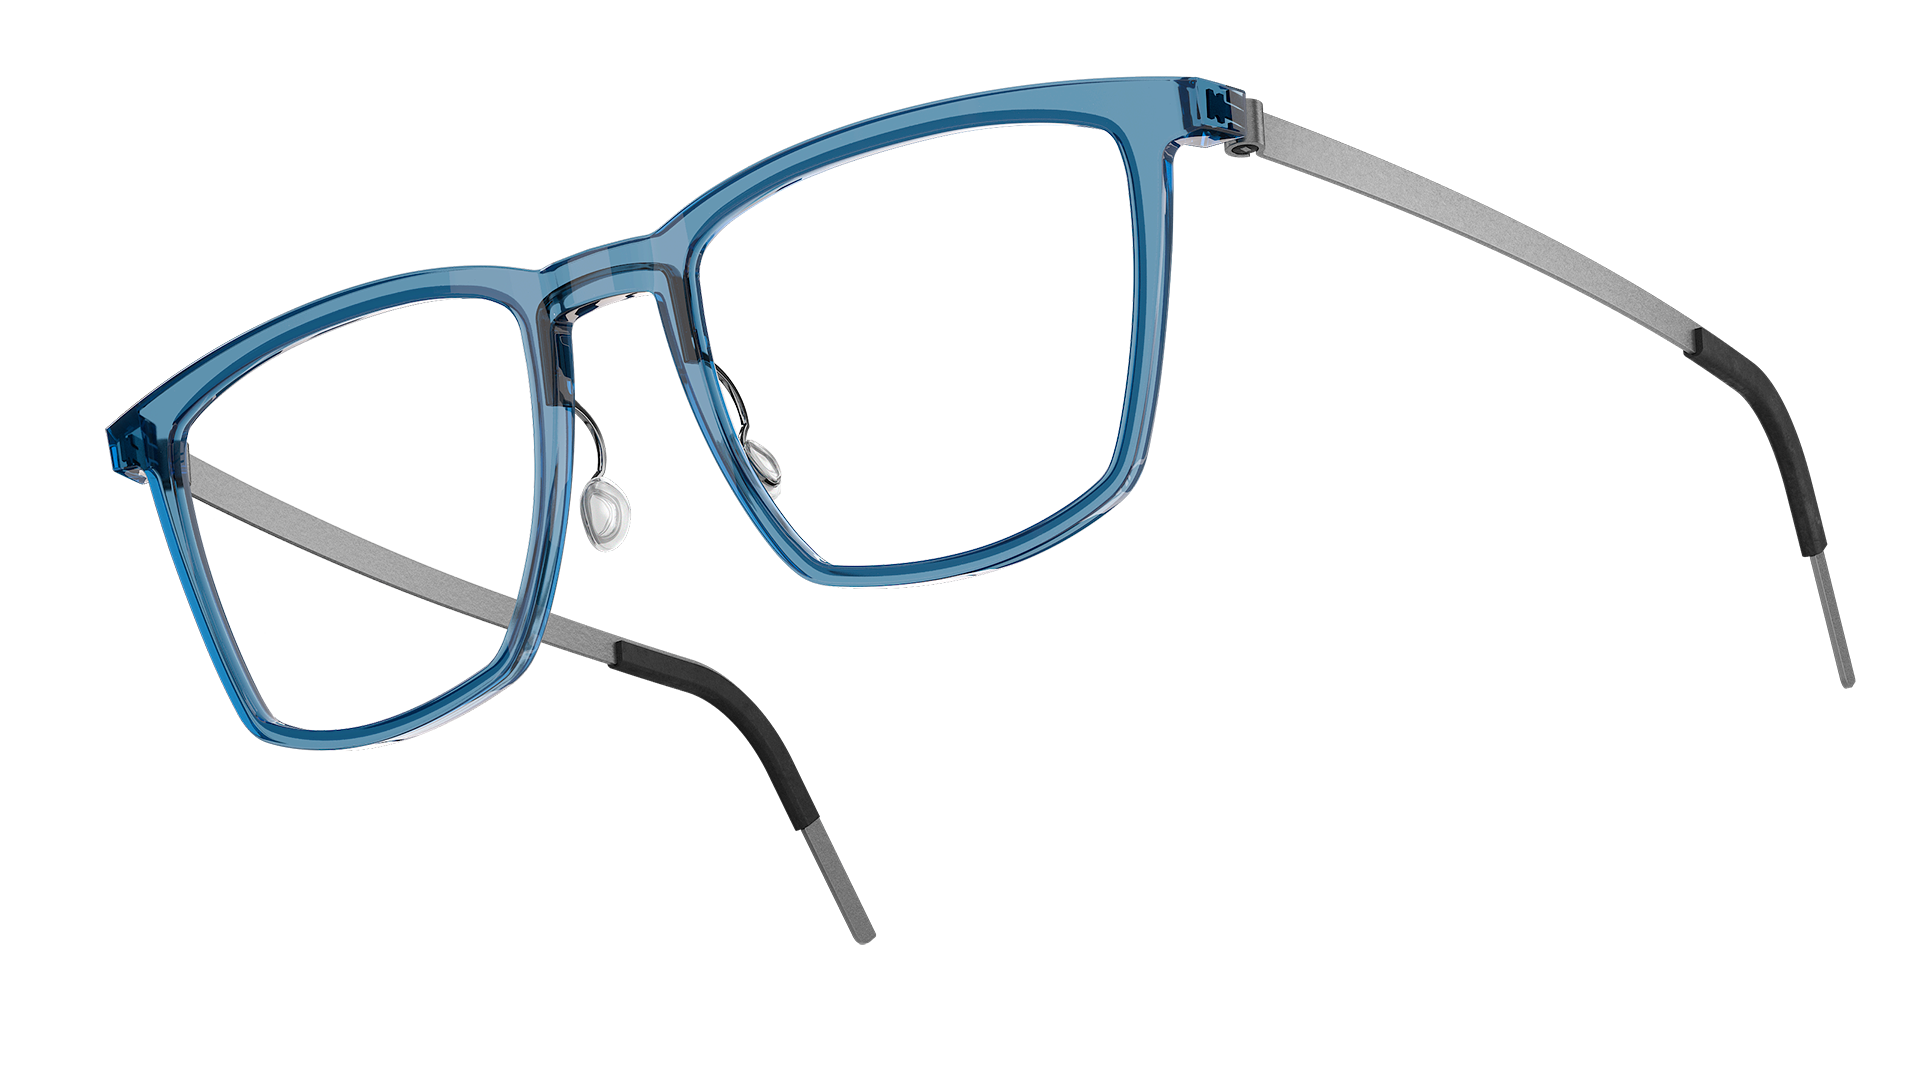 LINDBERG acetanium, Modell 1260 AI37, Brille aus Acetat und Titan in Transparent-Blau